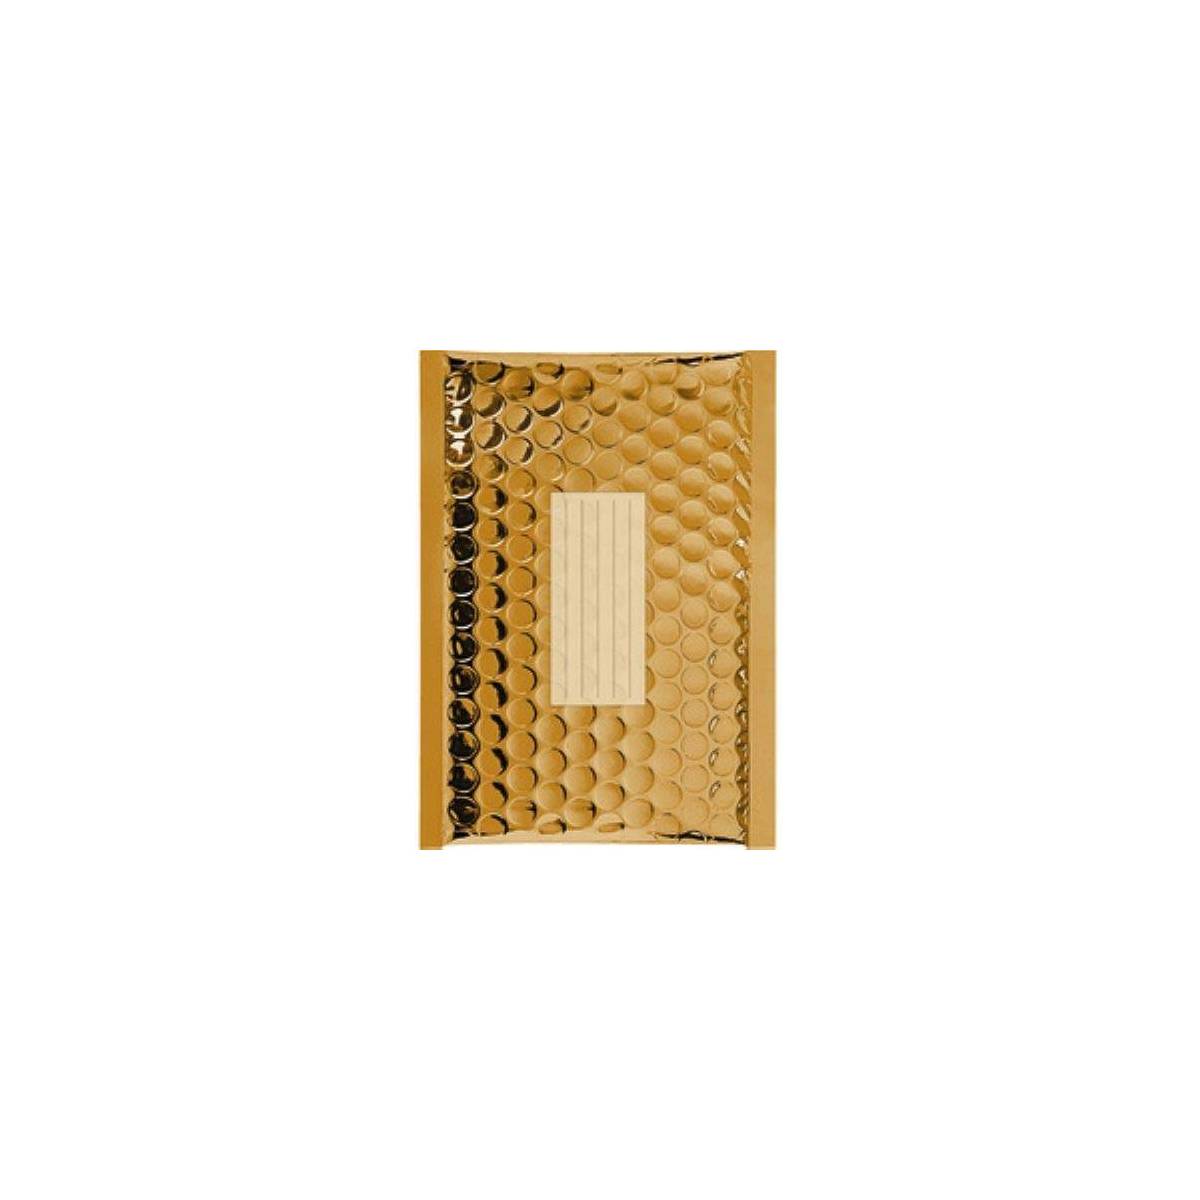 100 Enveloppes à Bulles Métalisées - 210X150 mm - C/0 - Qualité Premium (Gold)